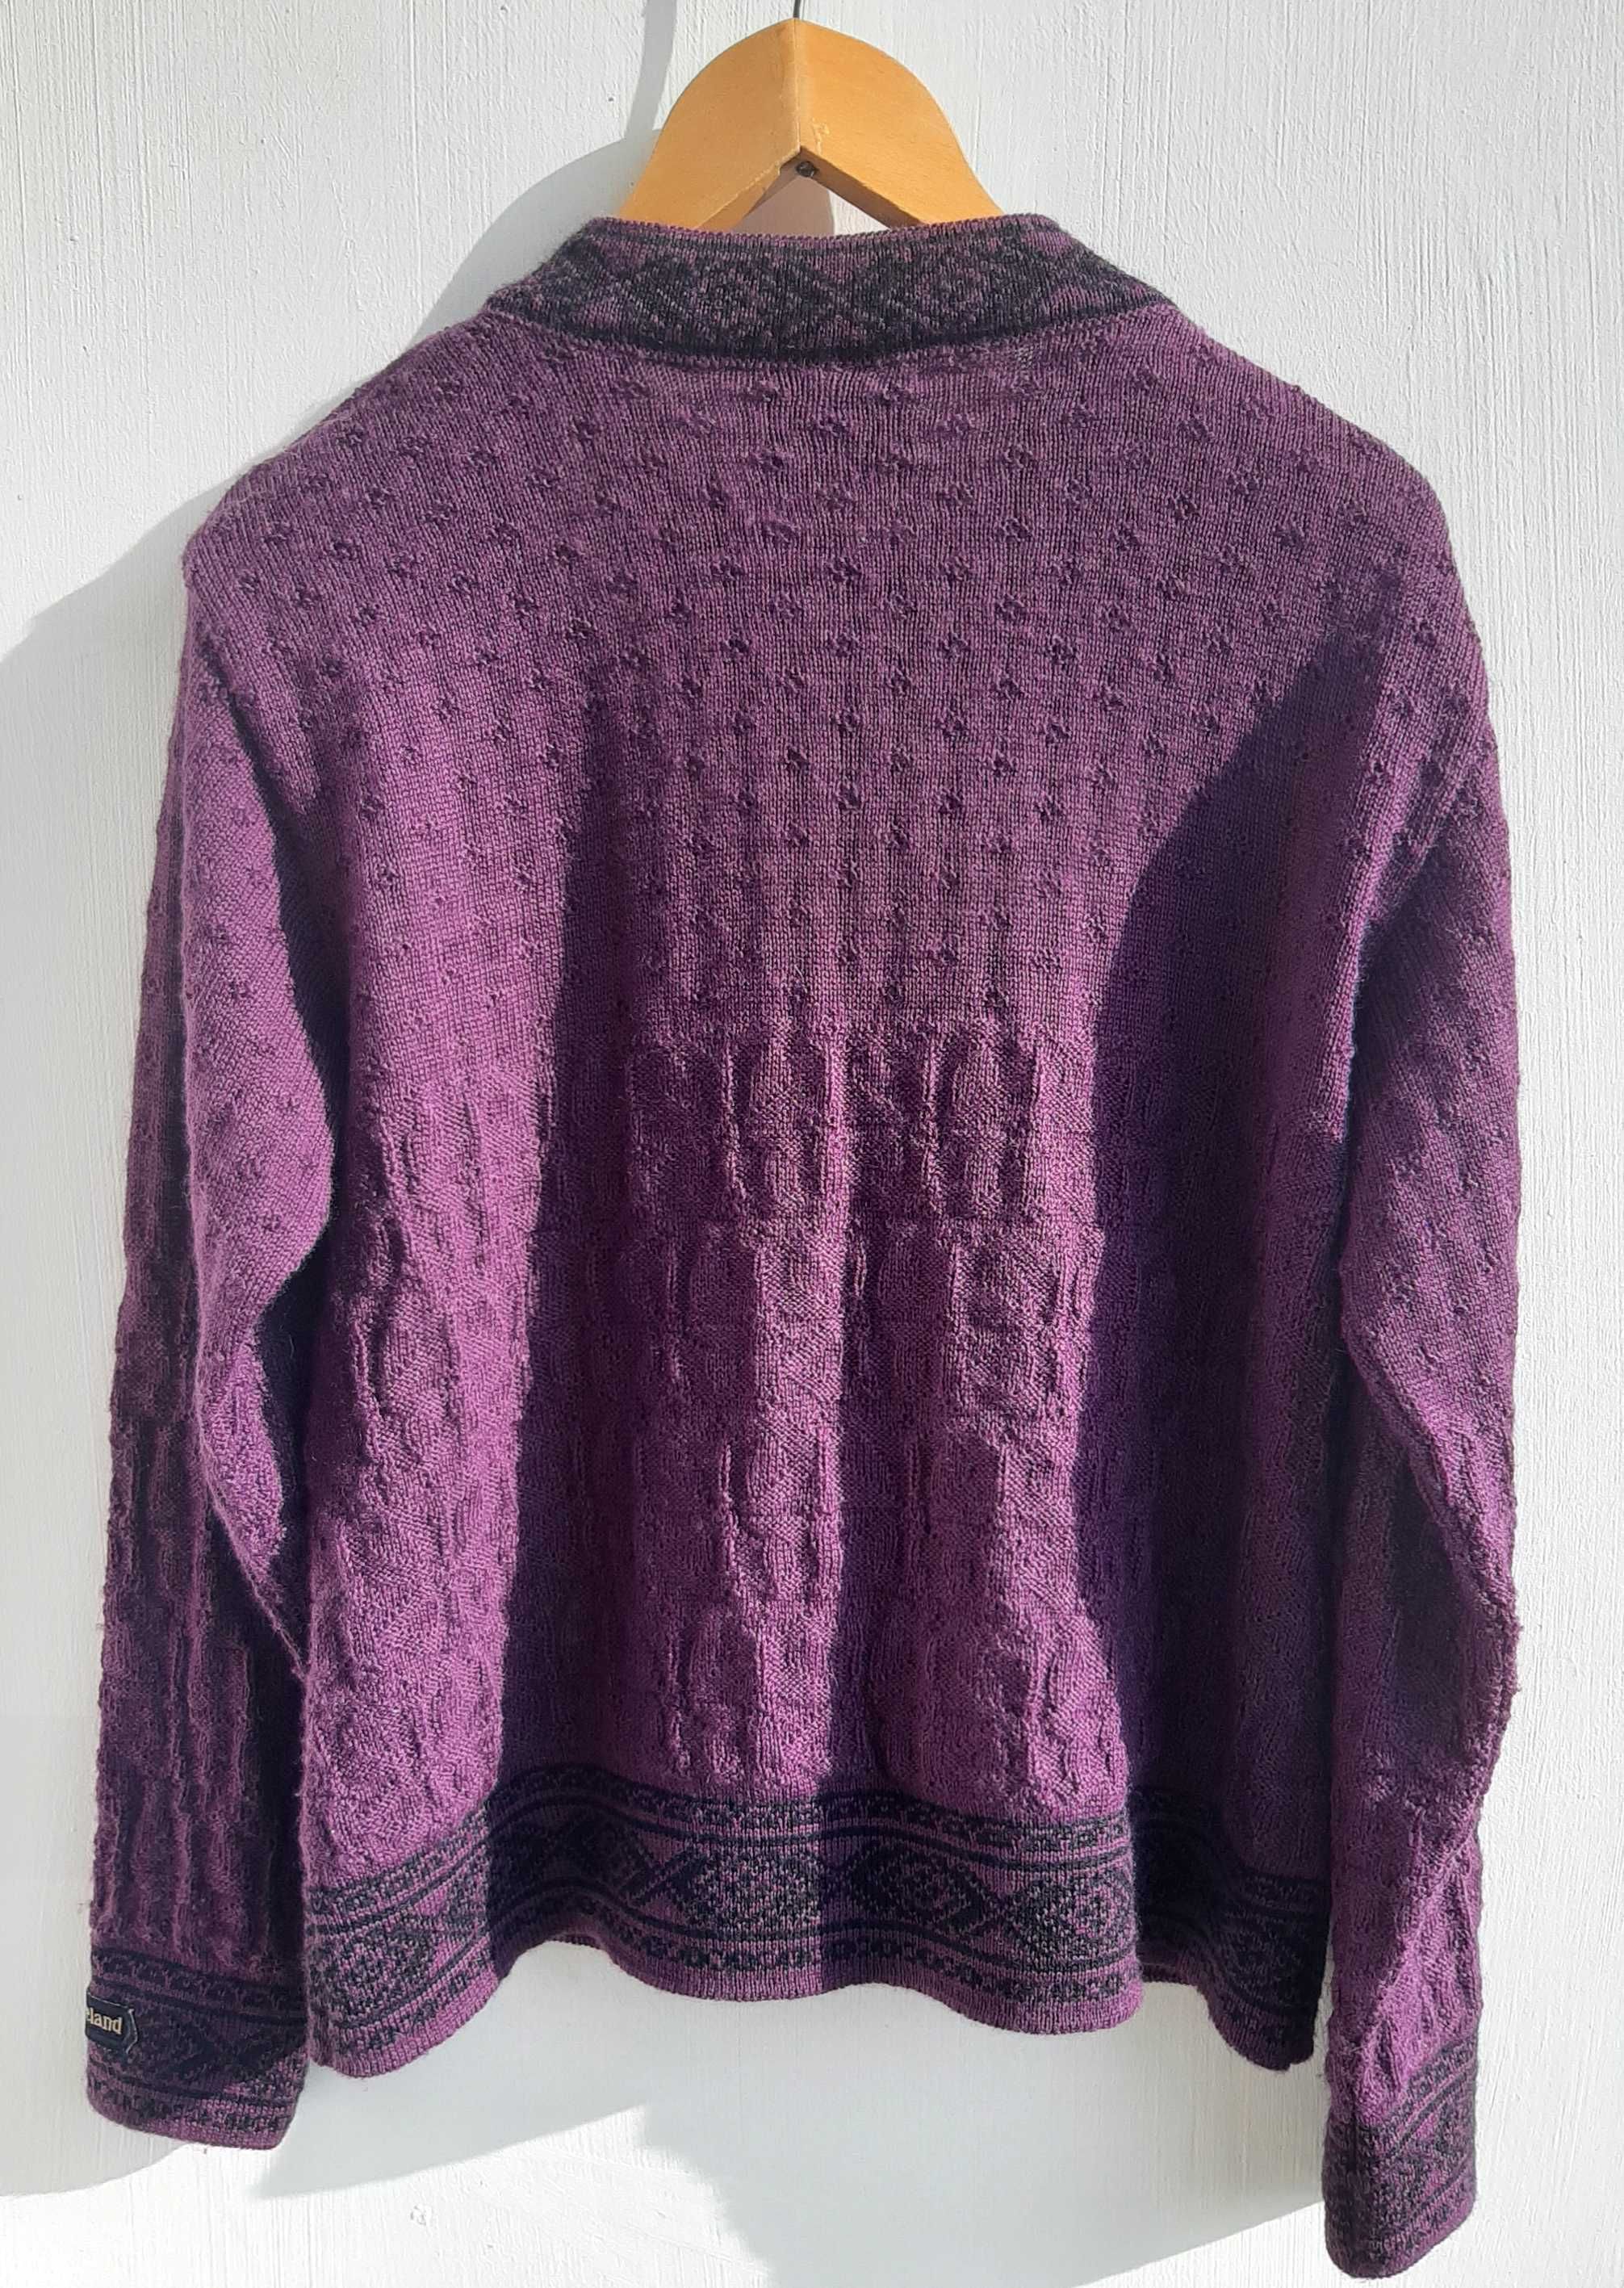 Skjaeveland of Norway damski rozpinany sweter/ kardigan 100% wełny